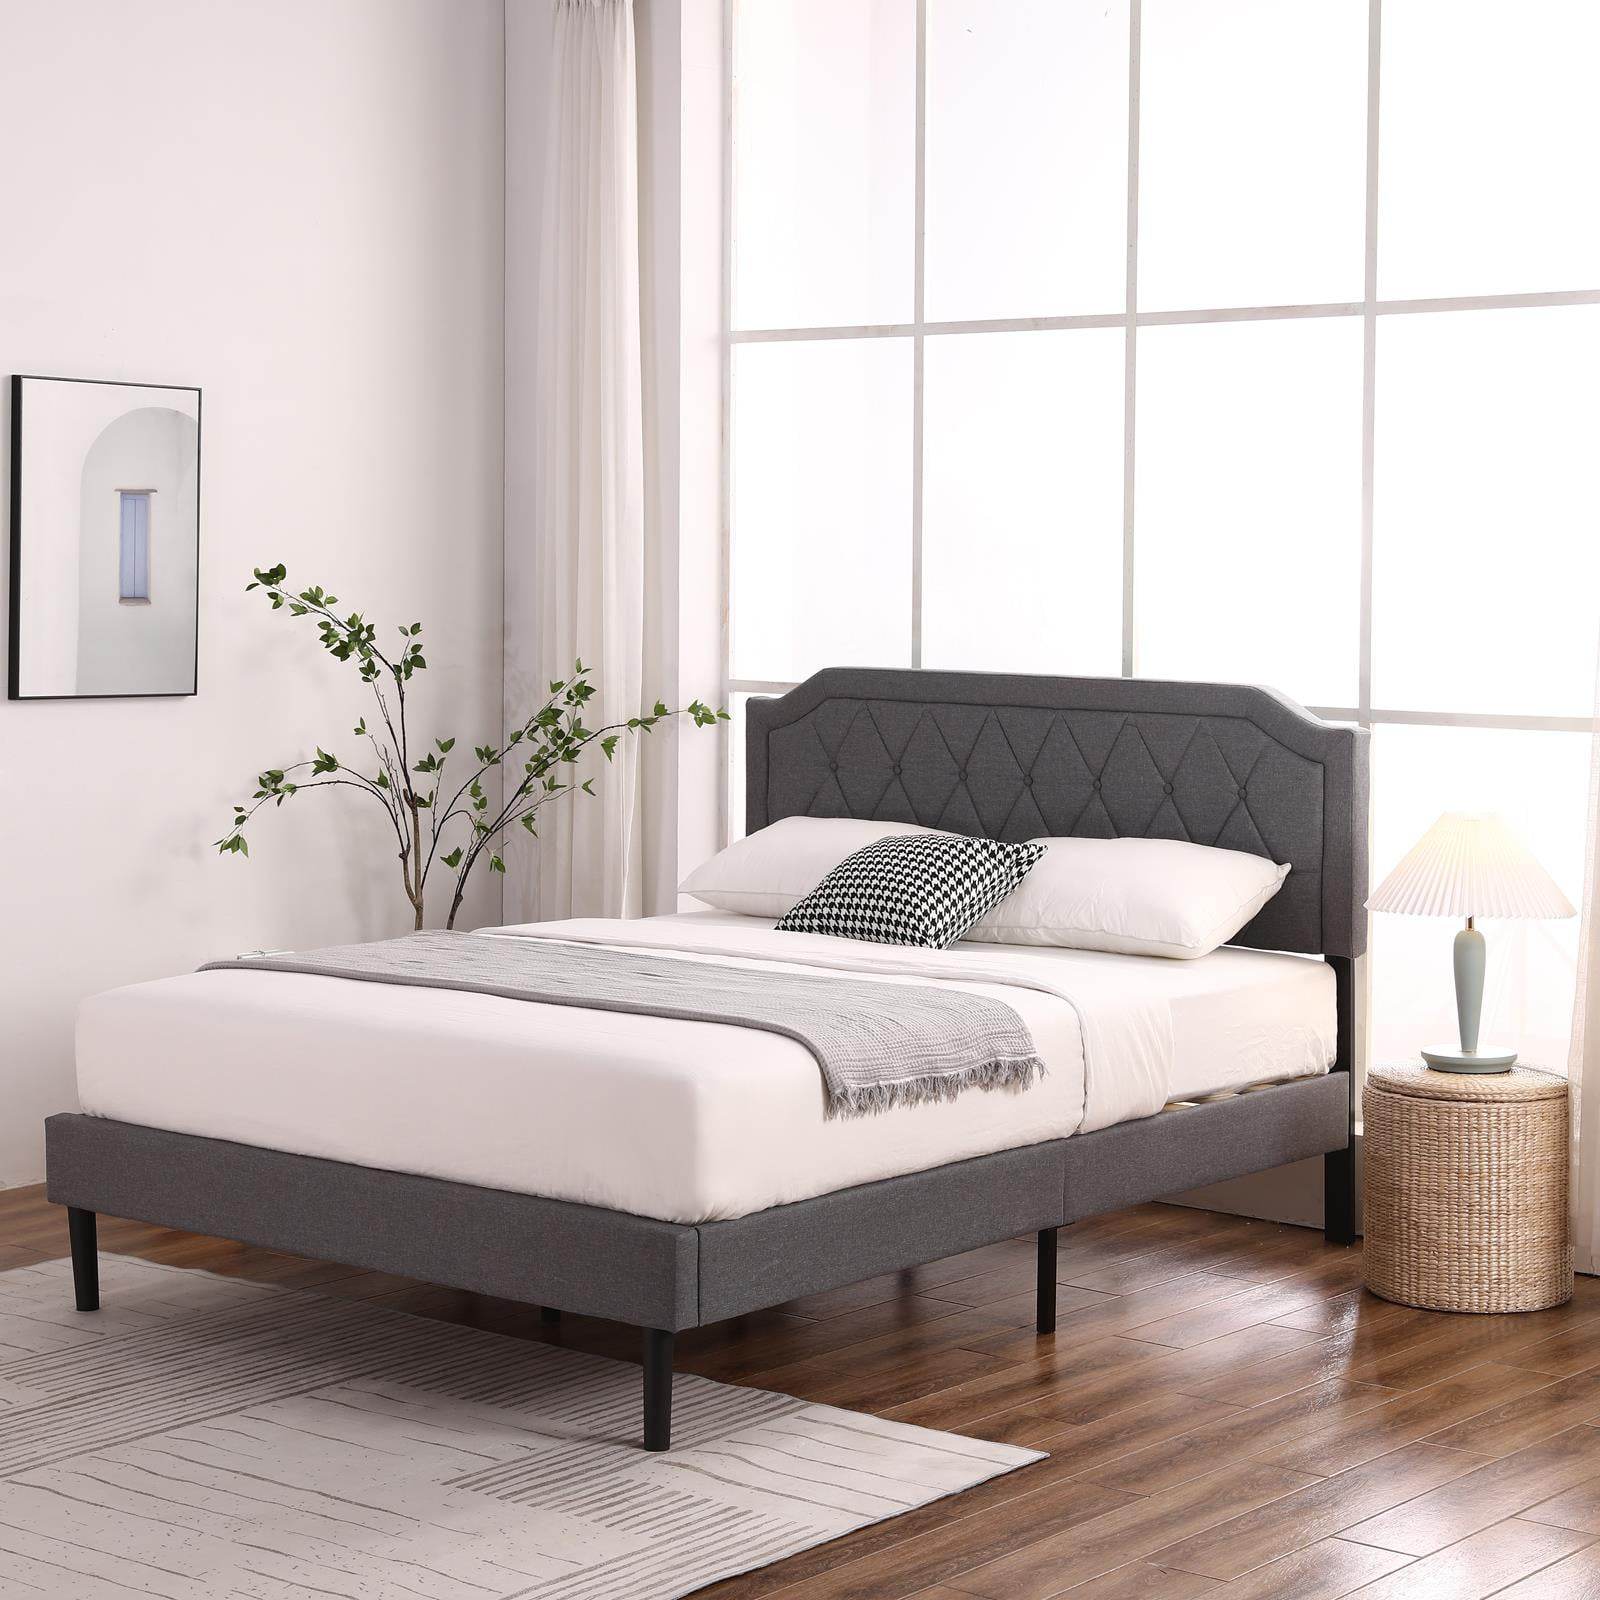 Upholstered Platform Bed Frame, Full Size Wood Slat Bed Frame